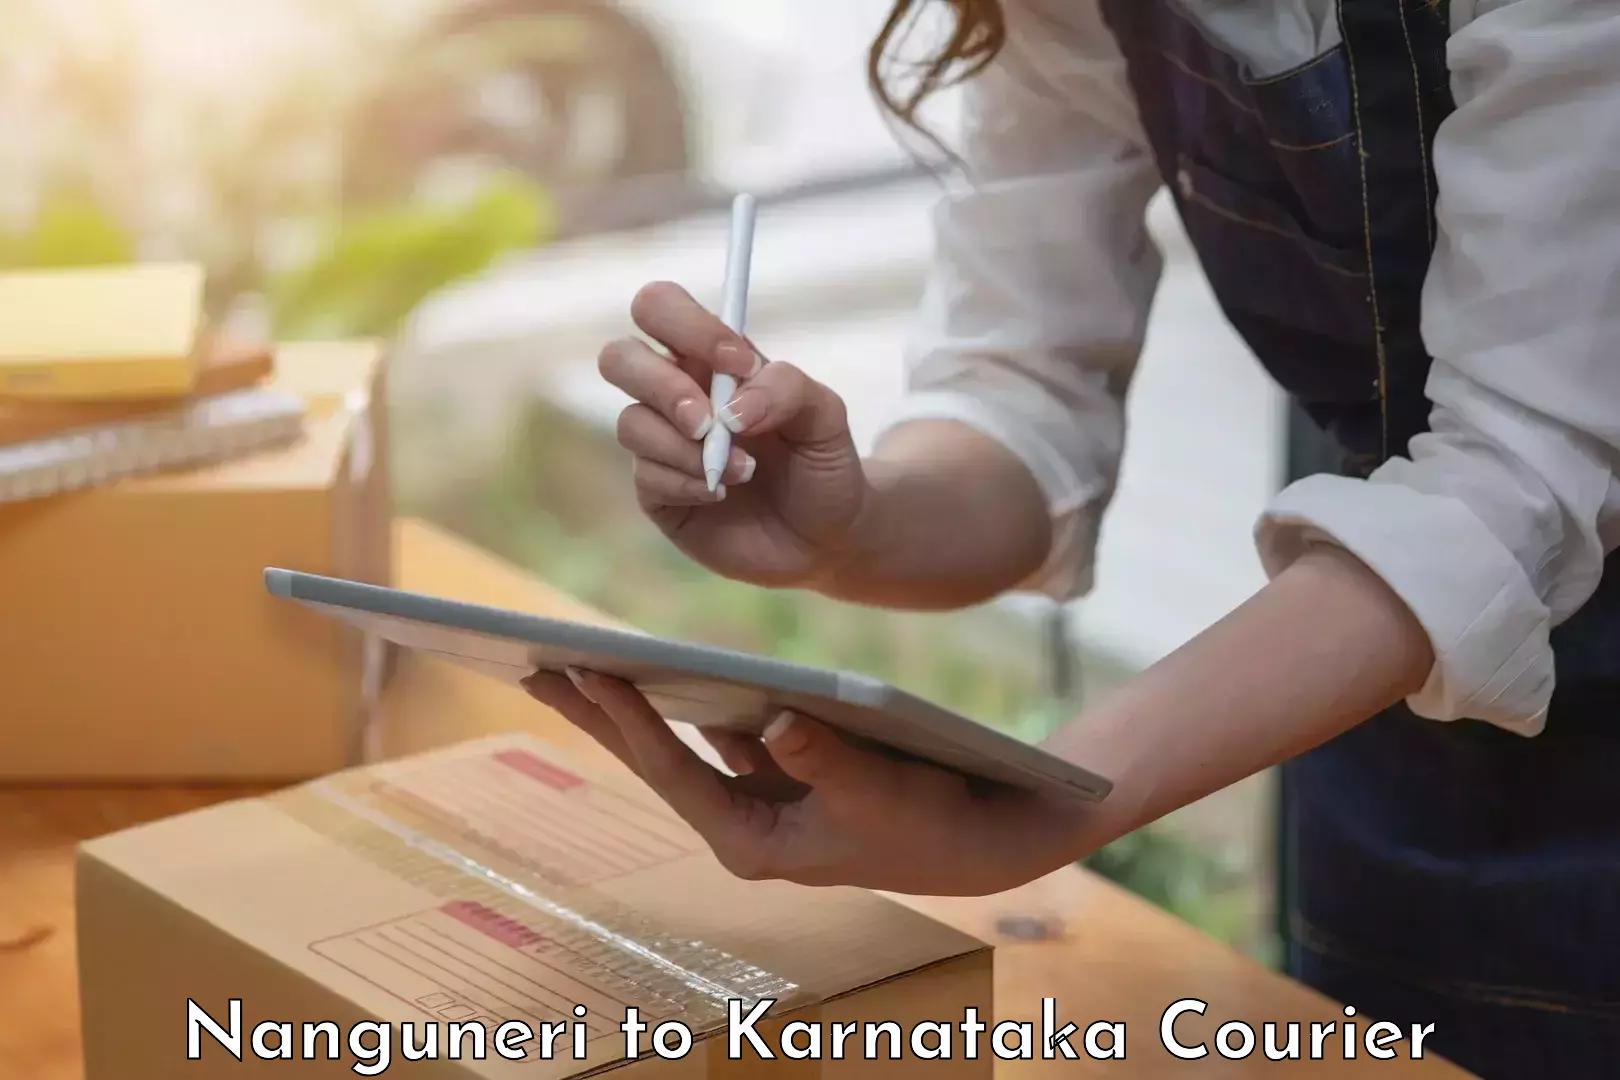 Efficient packing services Nanguneri to Karnataka